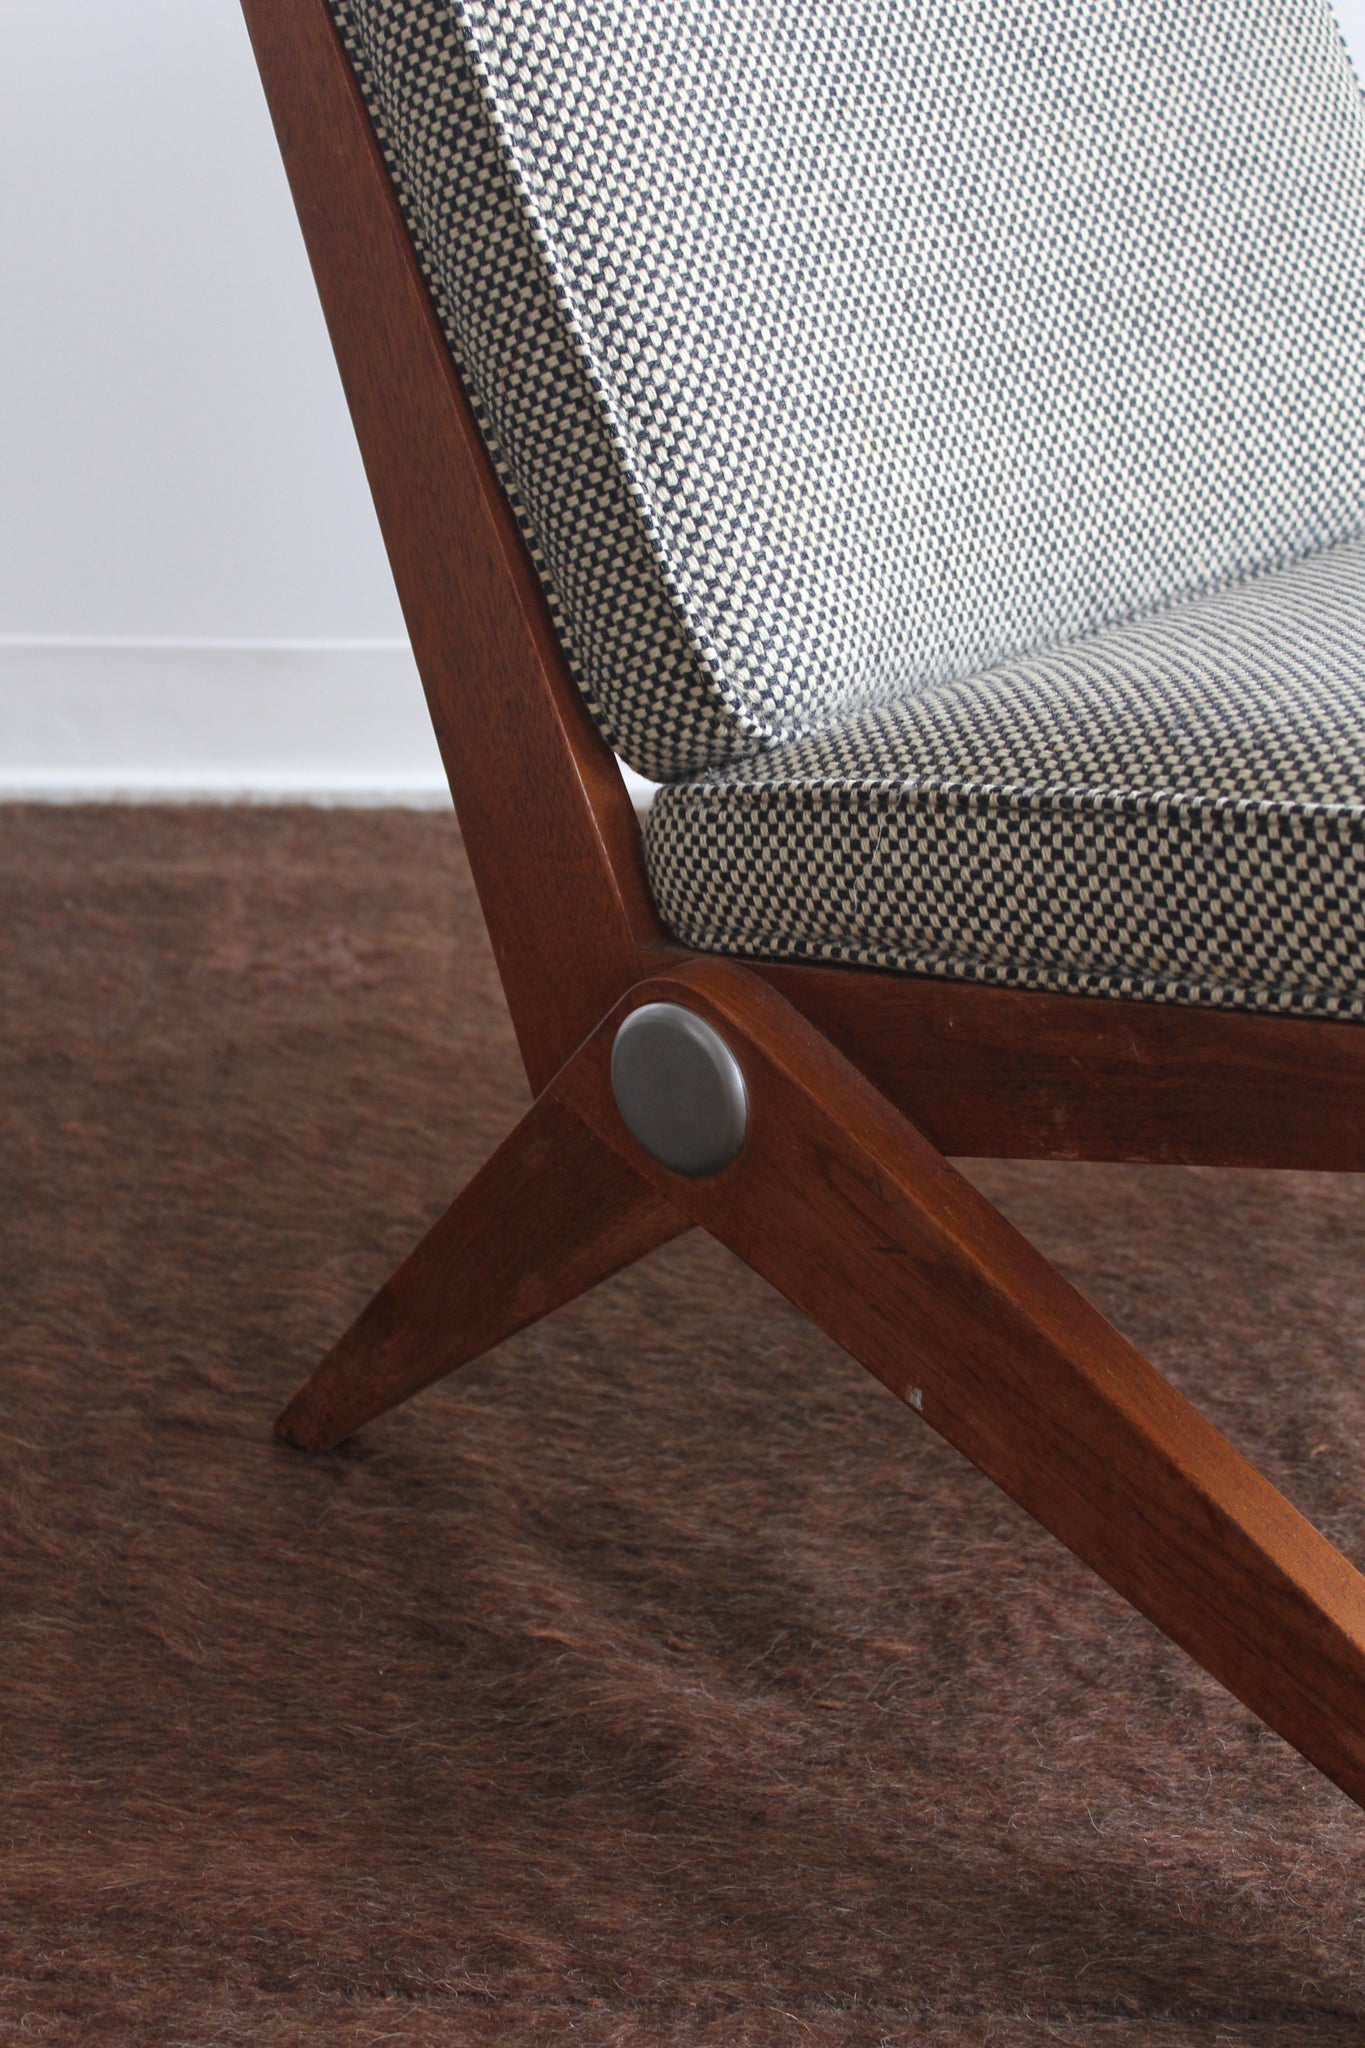 Model 92 Scissor Chair by Pierre Jeanneret for Knoll